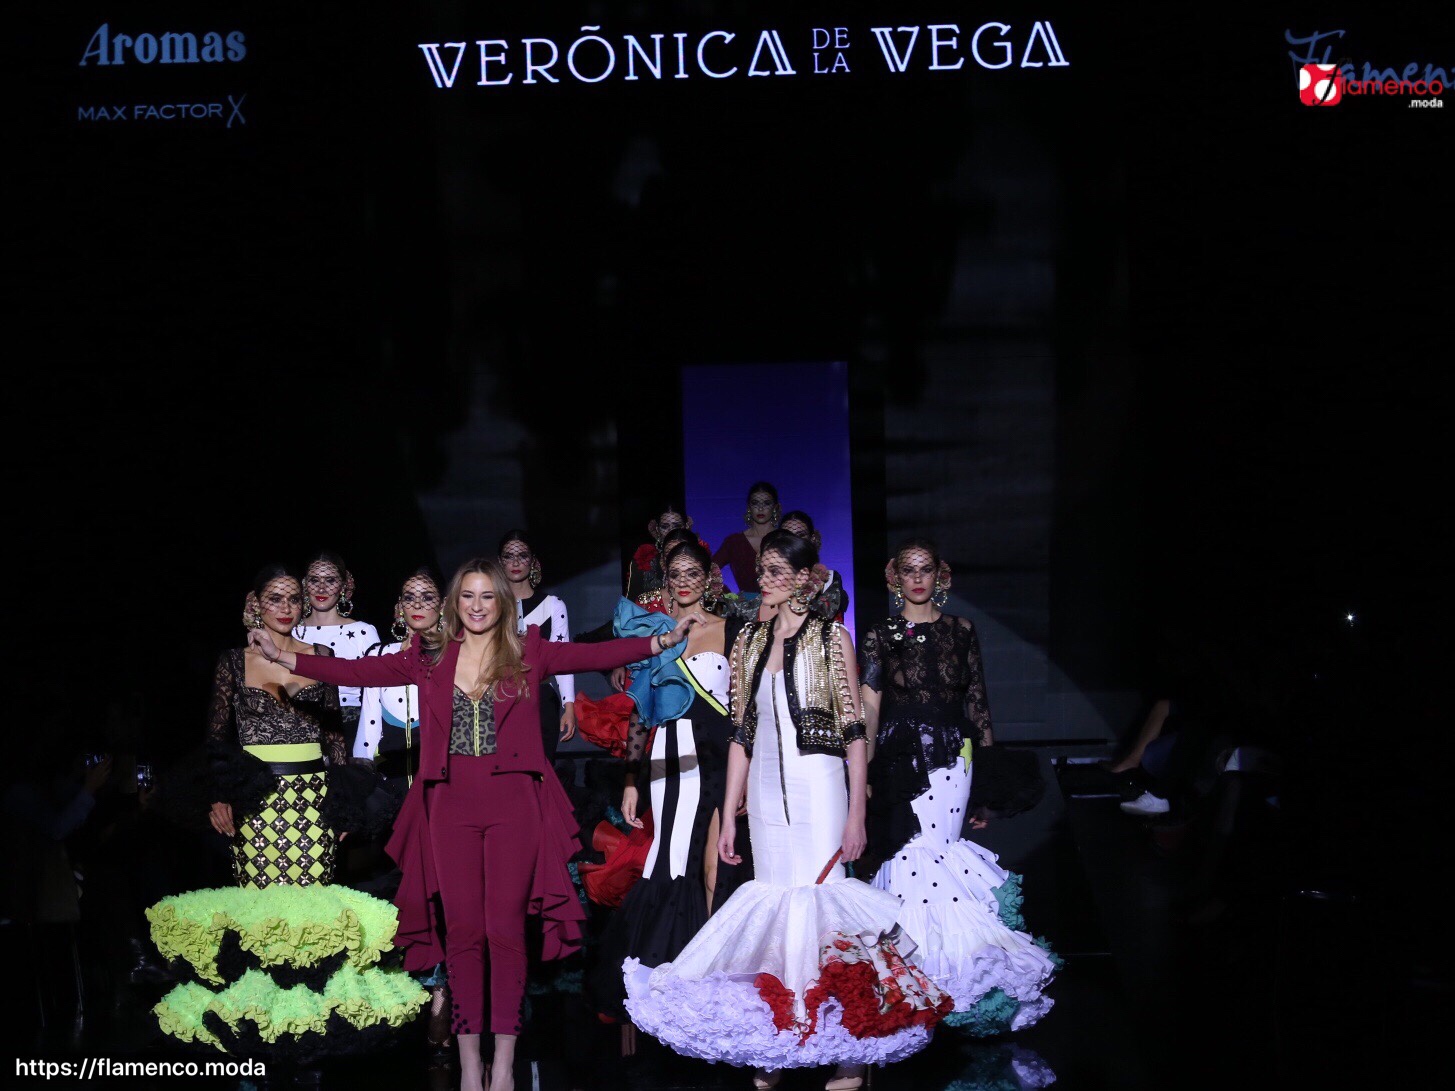 Verónica de la Vega  –  “Flamencas armadas” – Simof 2018